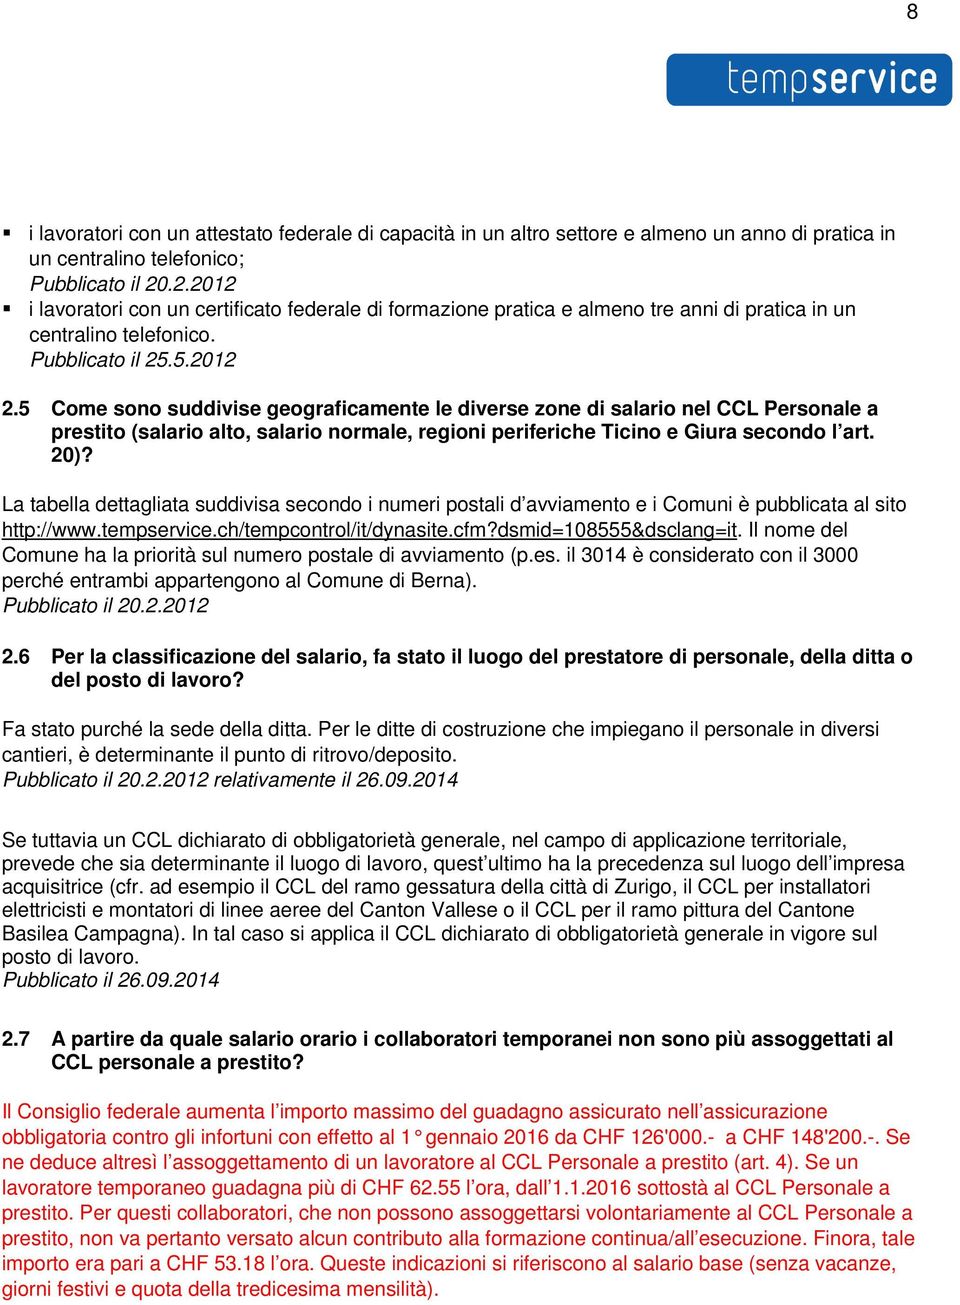 5 Come sono suddivise geograficamente le diverse zone di salario nel CCL Personale a prestito (salario alto, salario normale, regioni periferiche Ticino e Giura secondo l art. 20)?